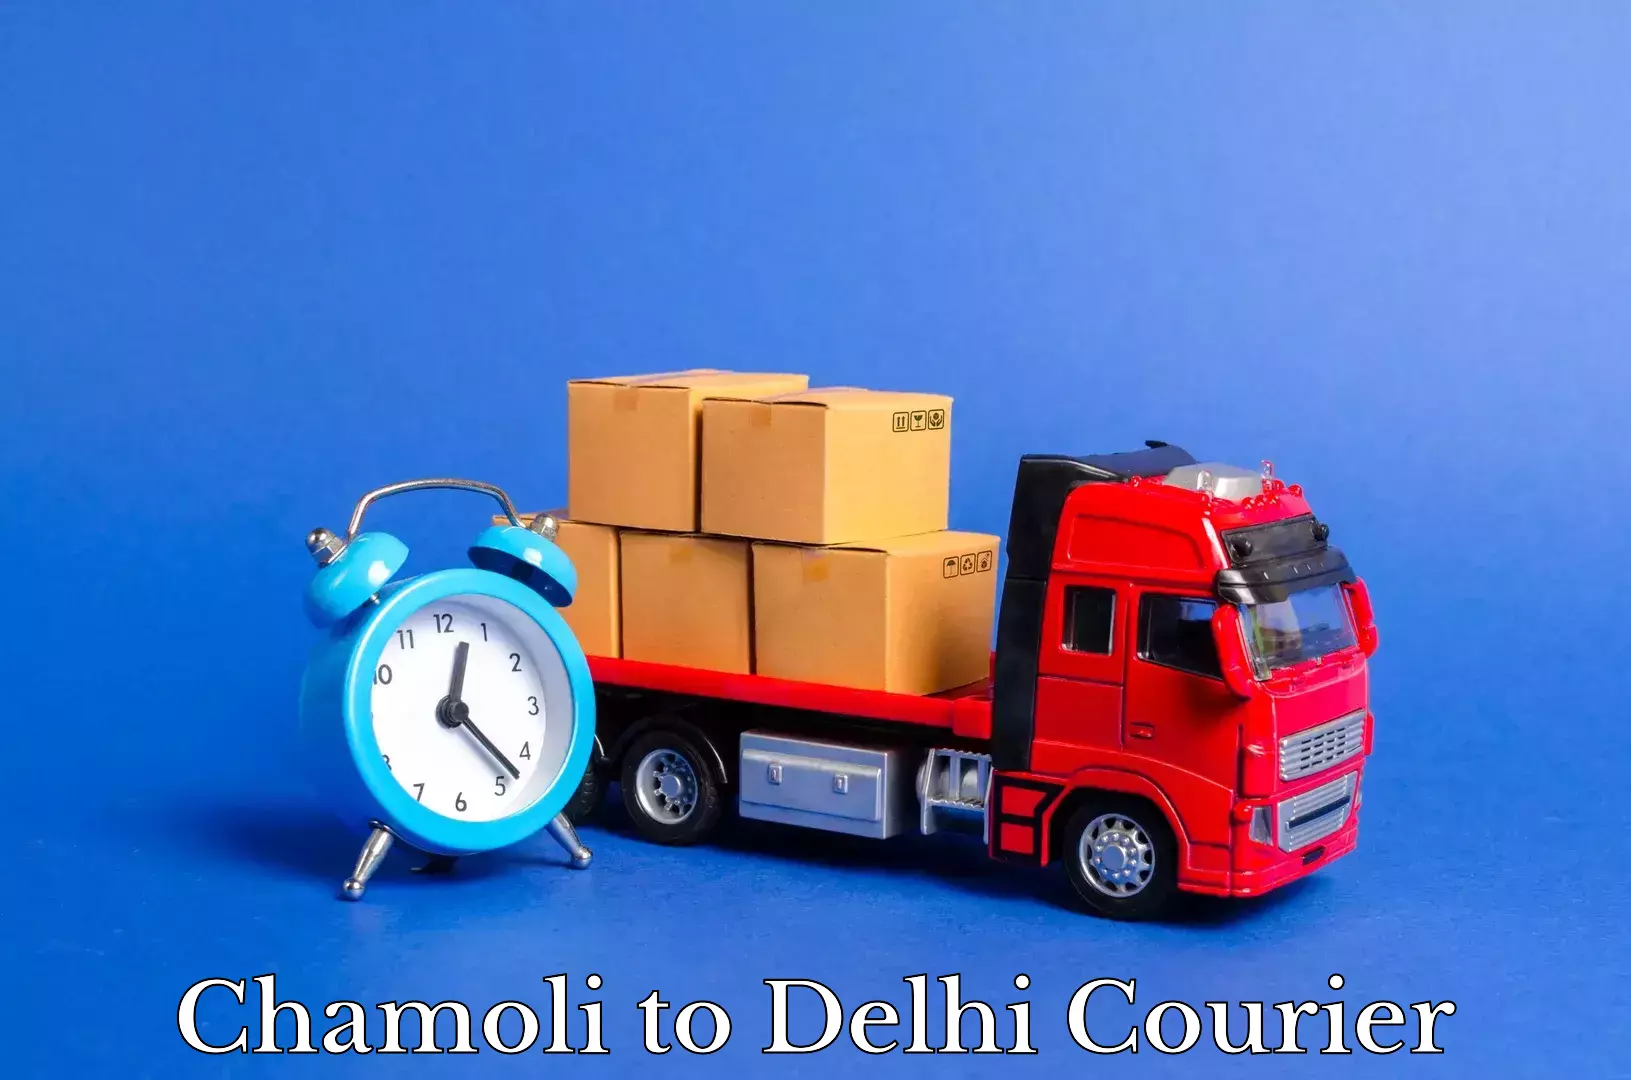 Trusted moving company Chamoli to Delhi